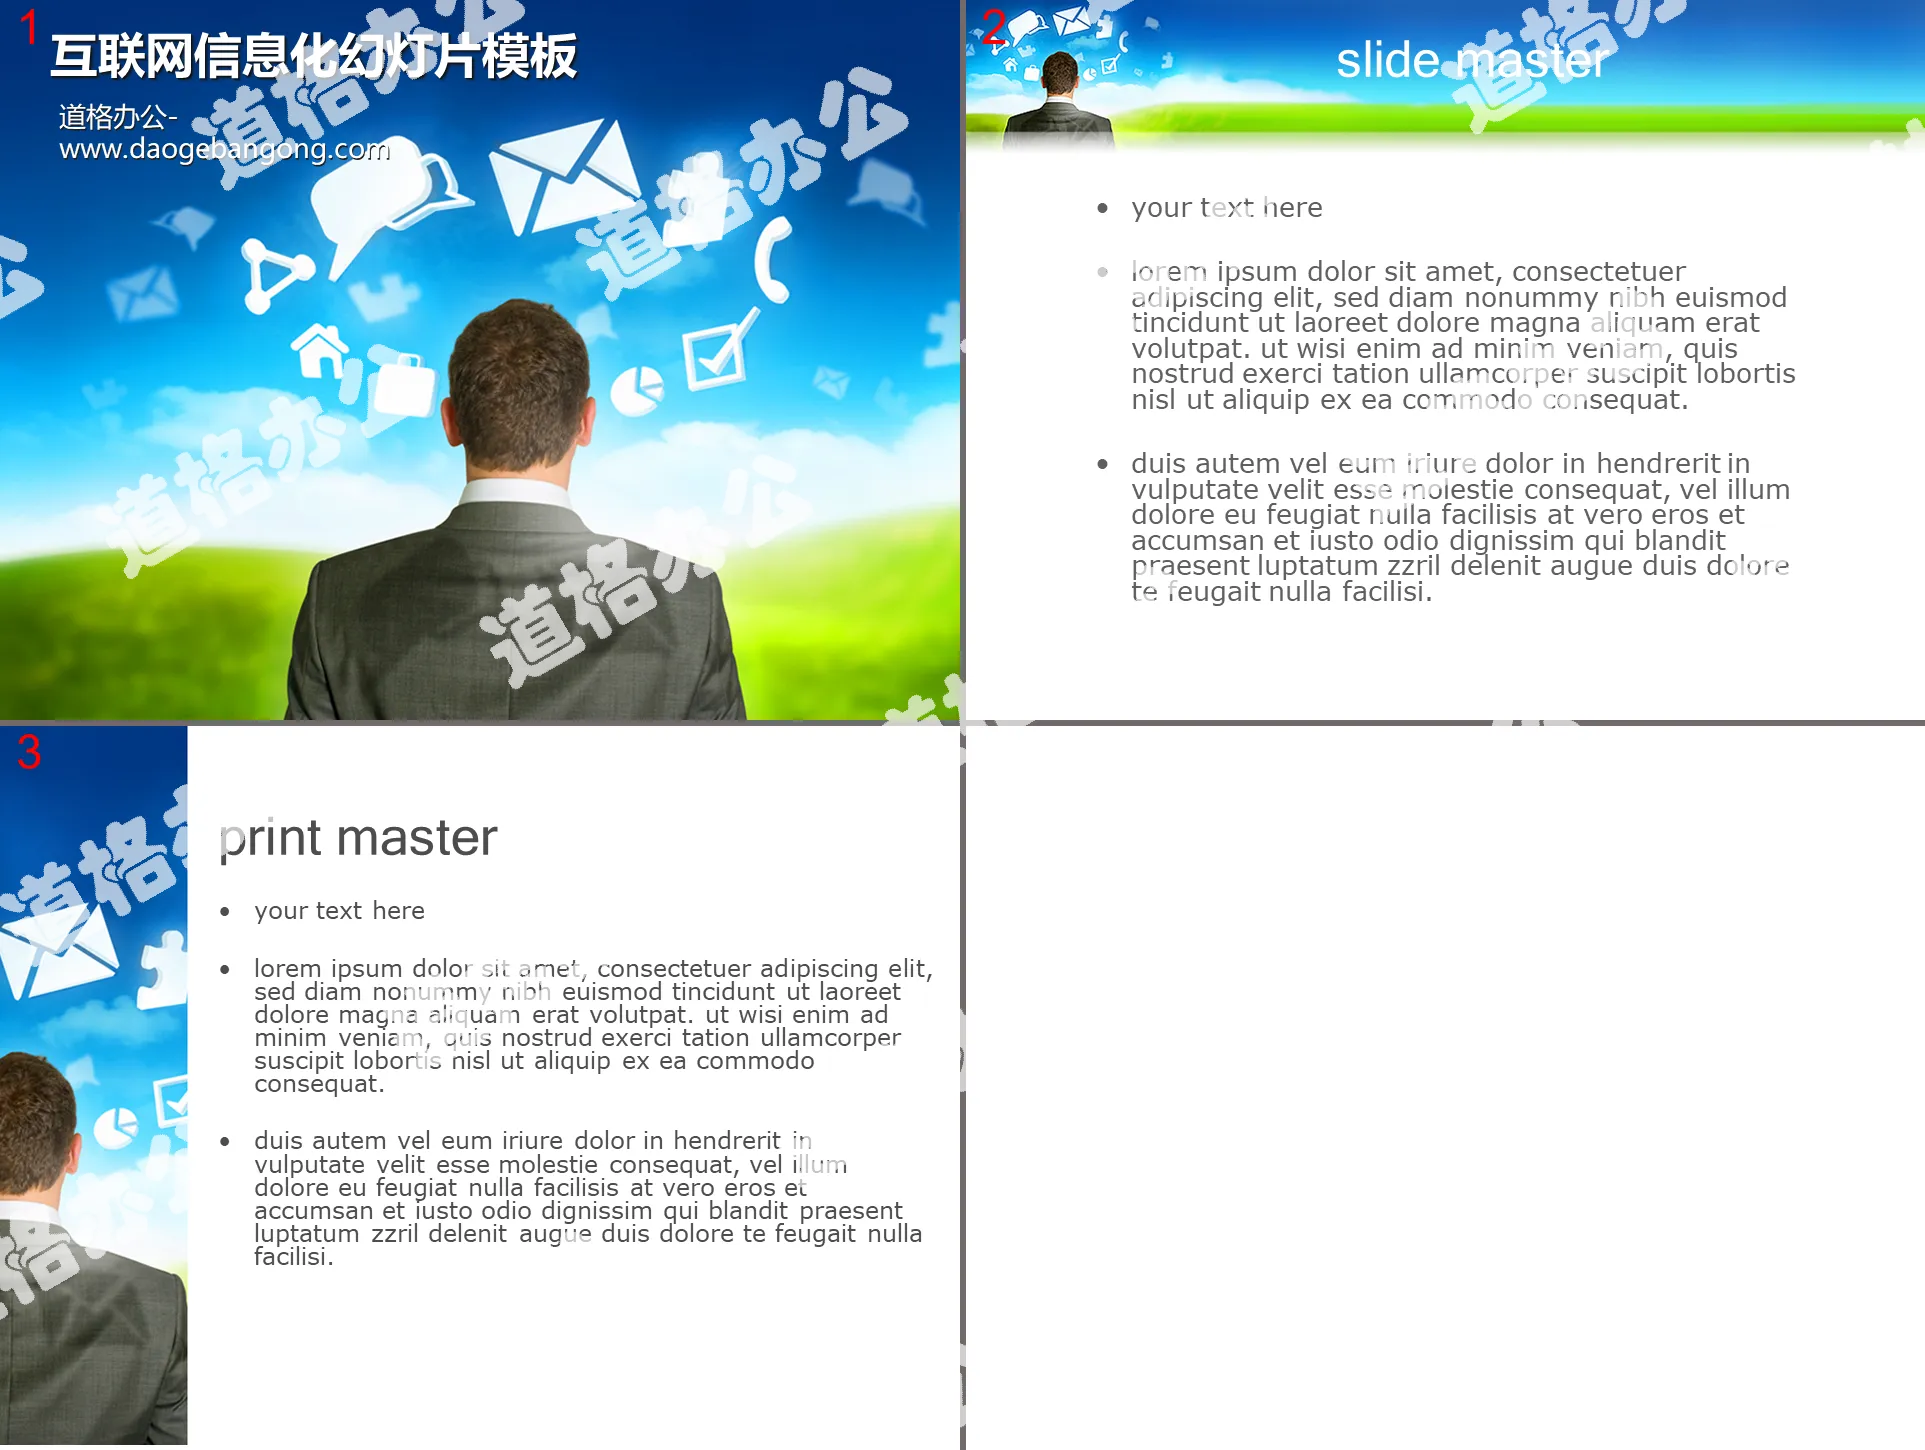 Internet information technology slide template download